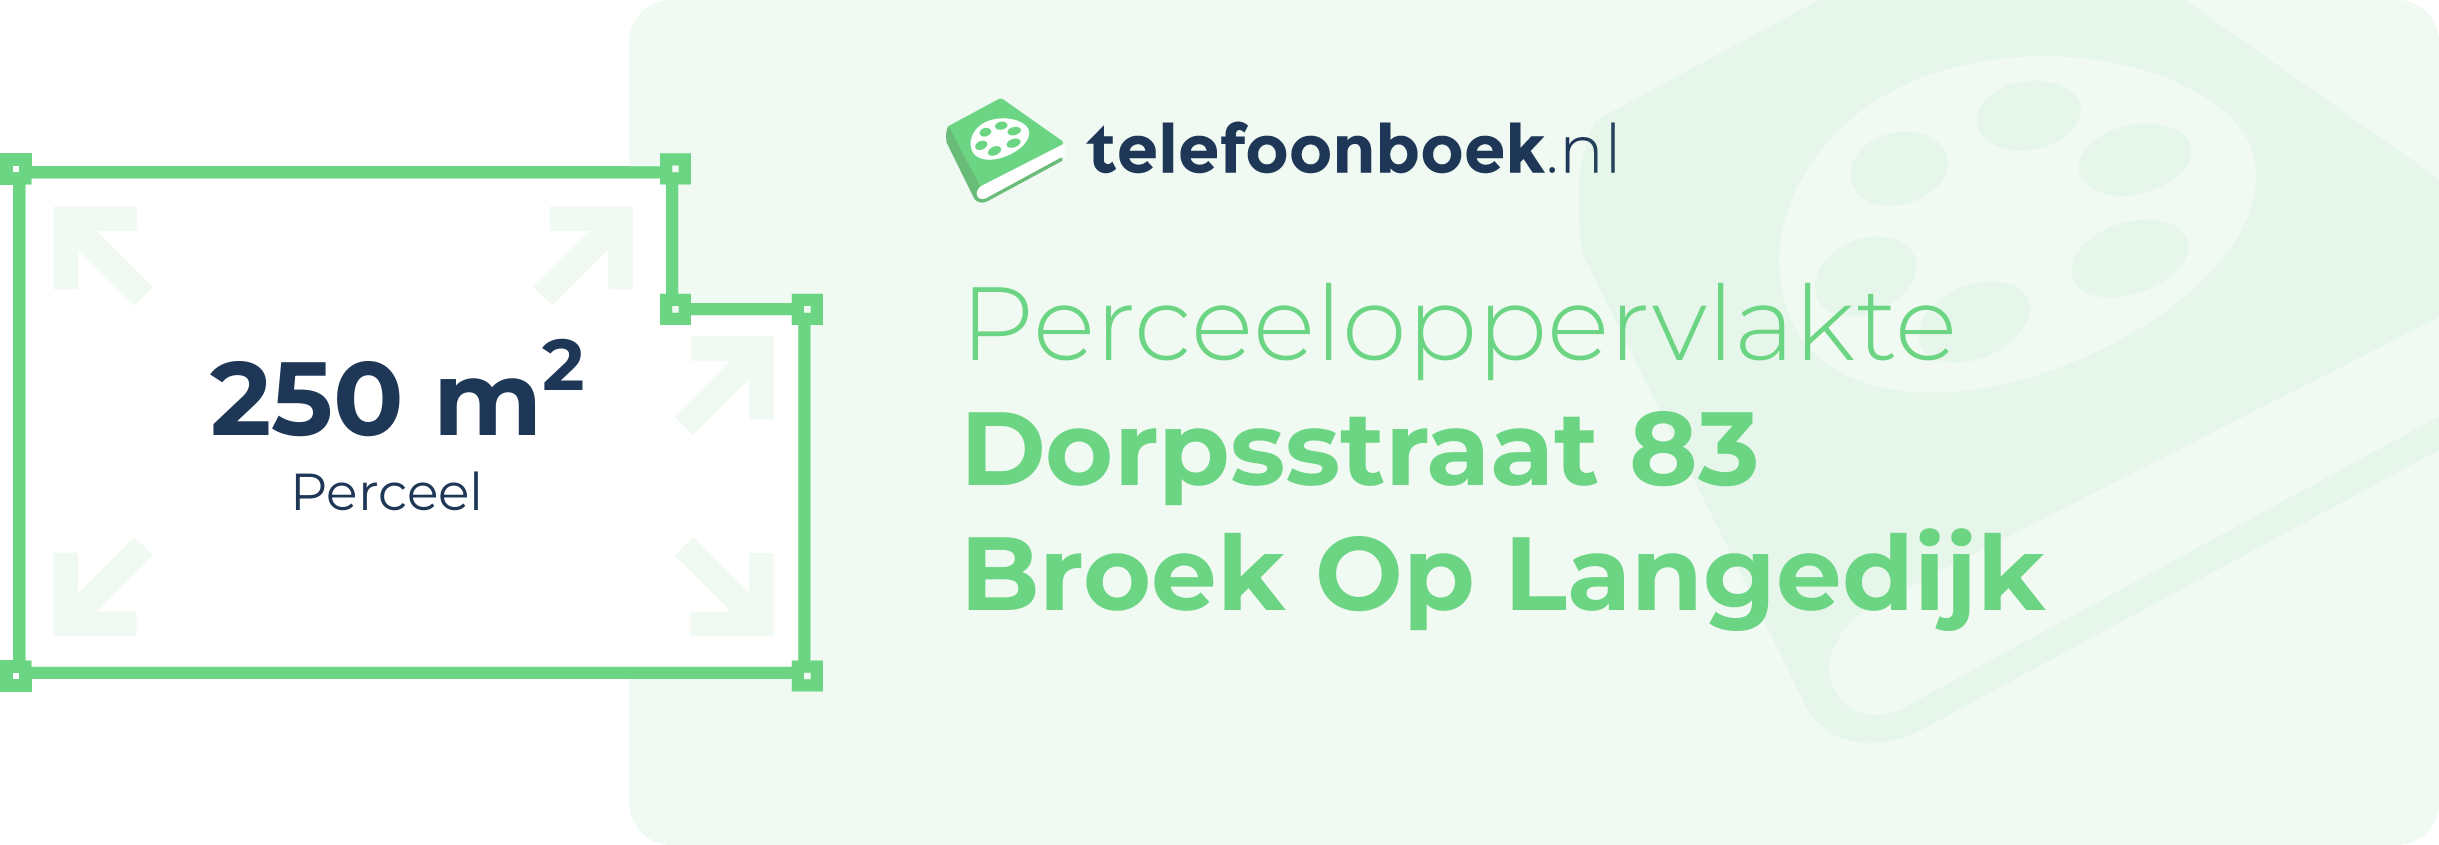 Perceeloppervlakte Dorpsstraat 83 Broek Op Langedijk